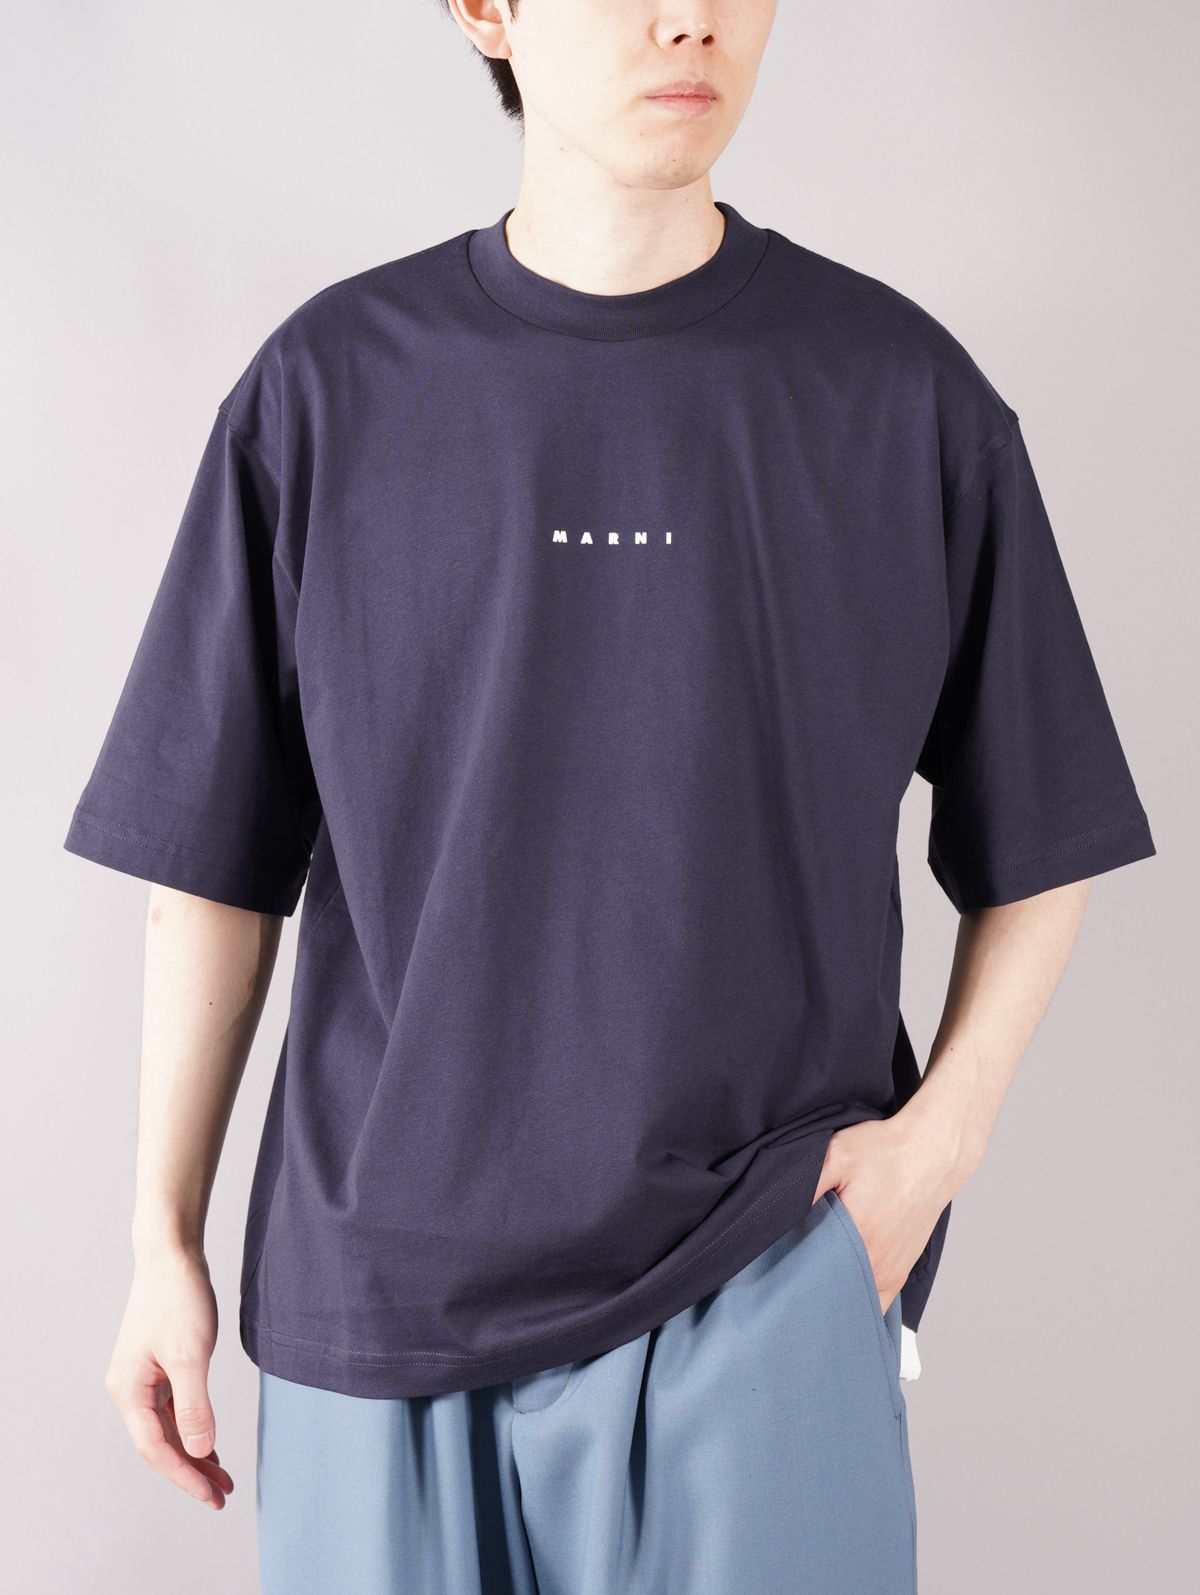 MARNI - LOGO T-SHIRT / ロゴ Tシャツ (ホワイト) | Confidence